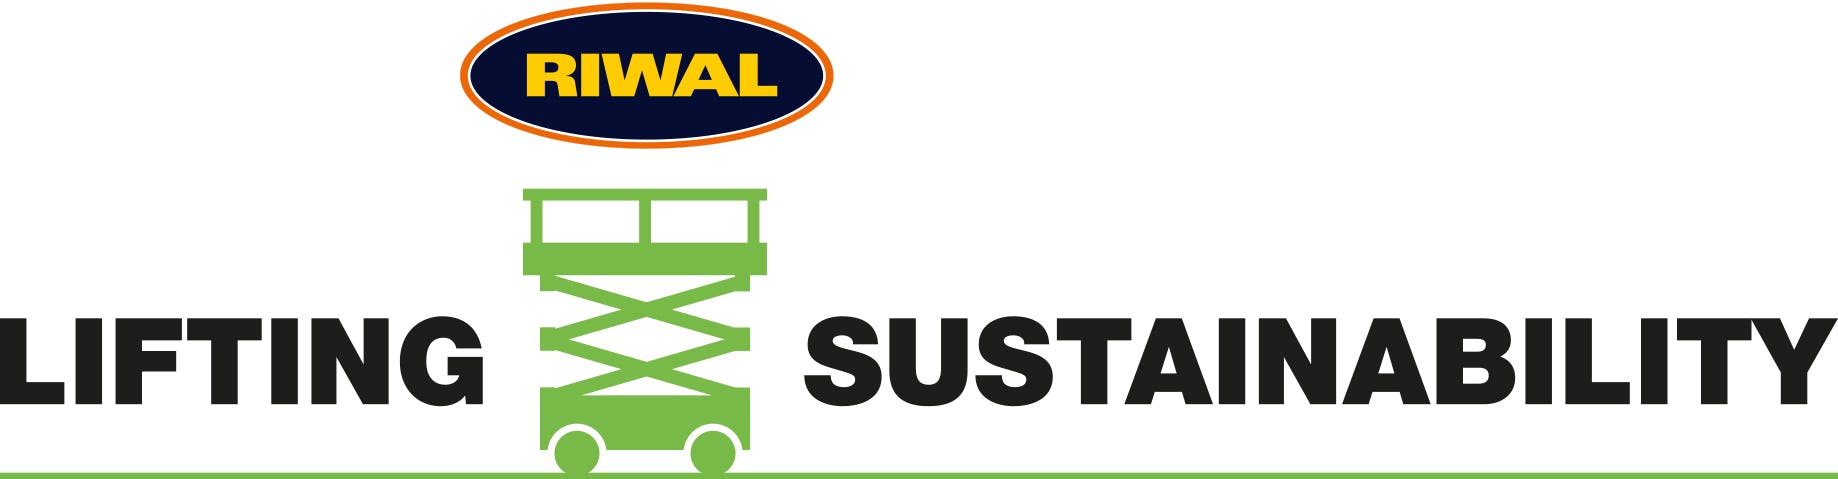 Lift sustainability logo